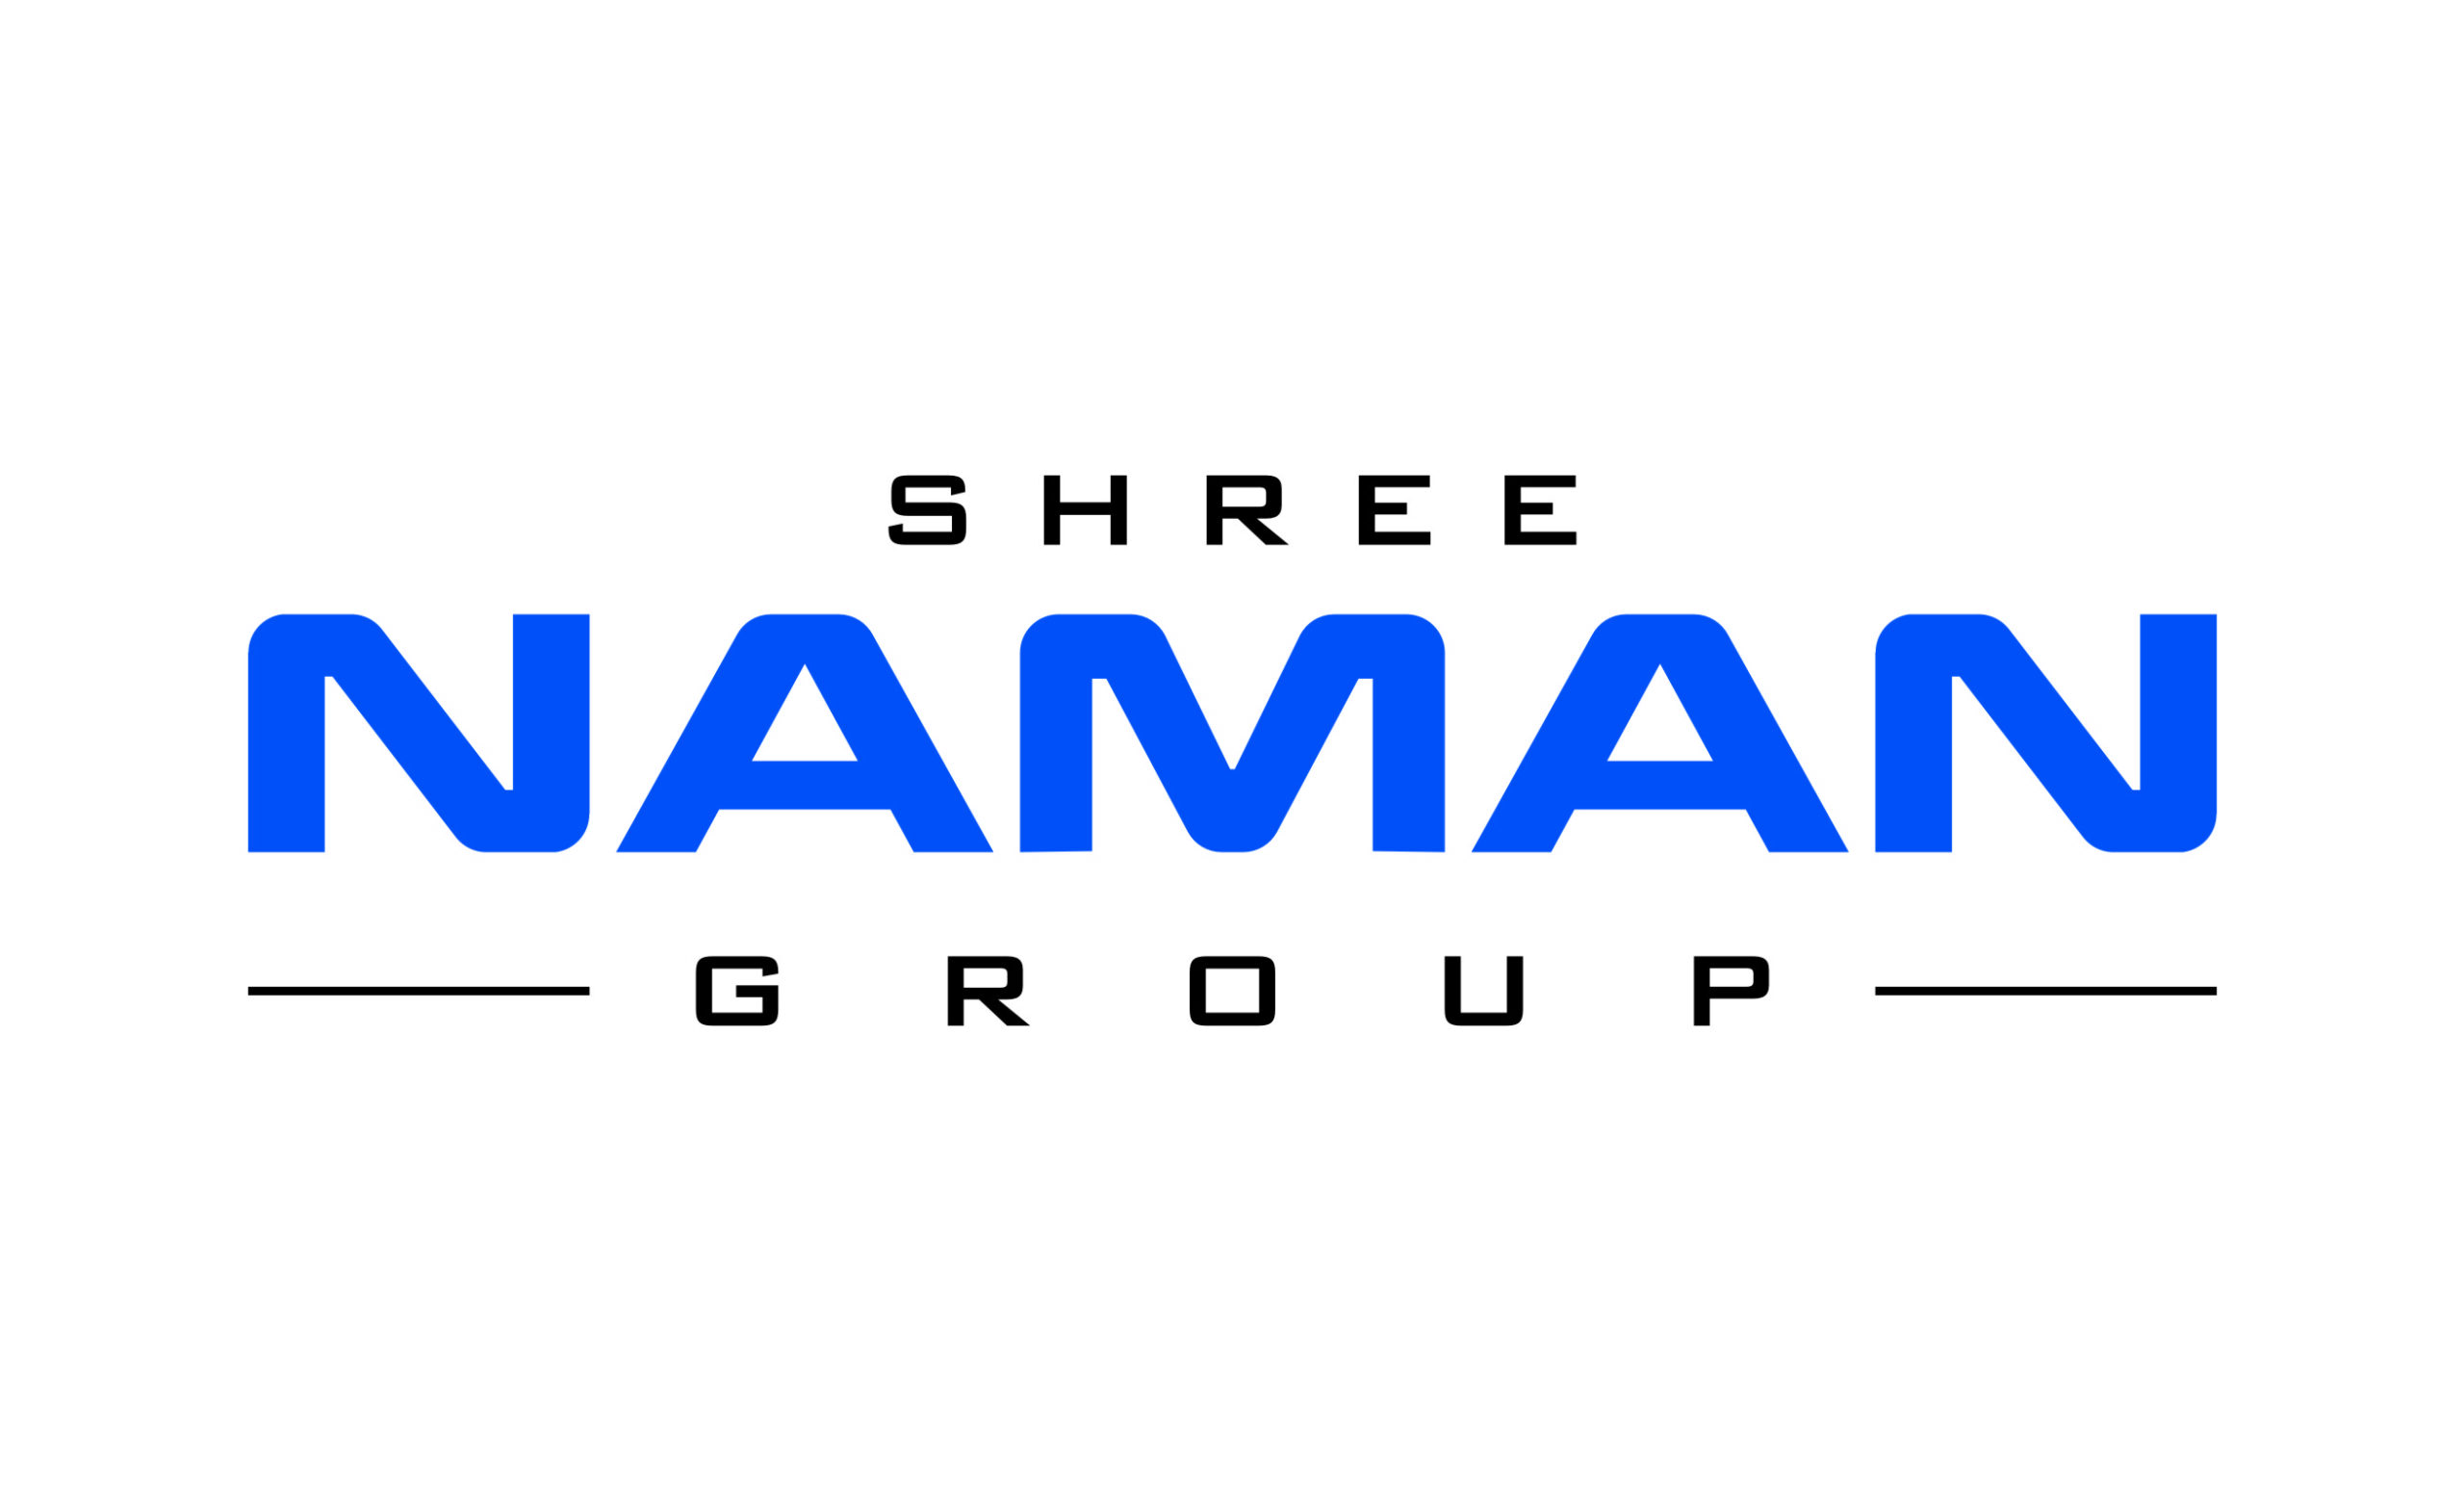 Shree Naman Group logo scaled